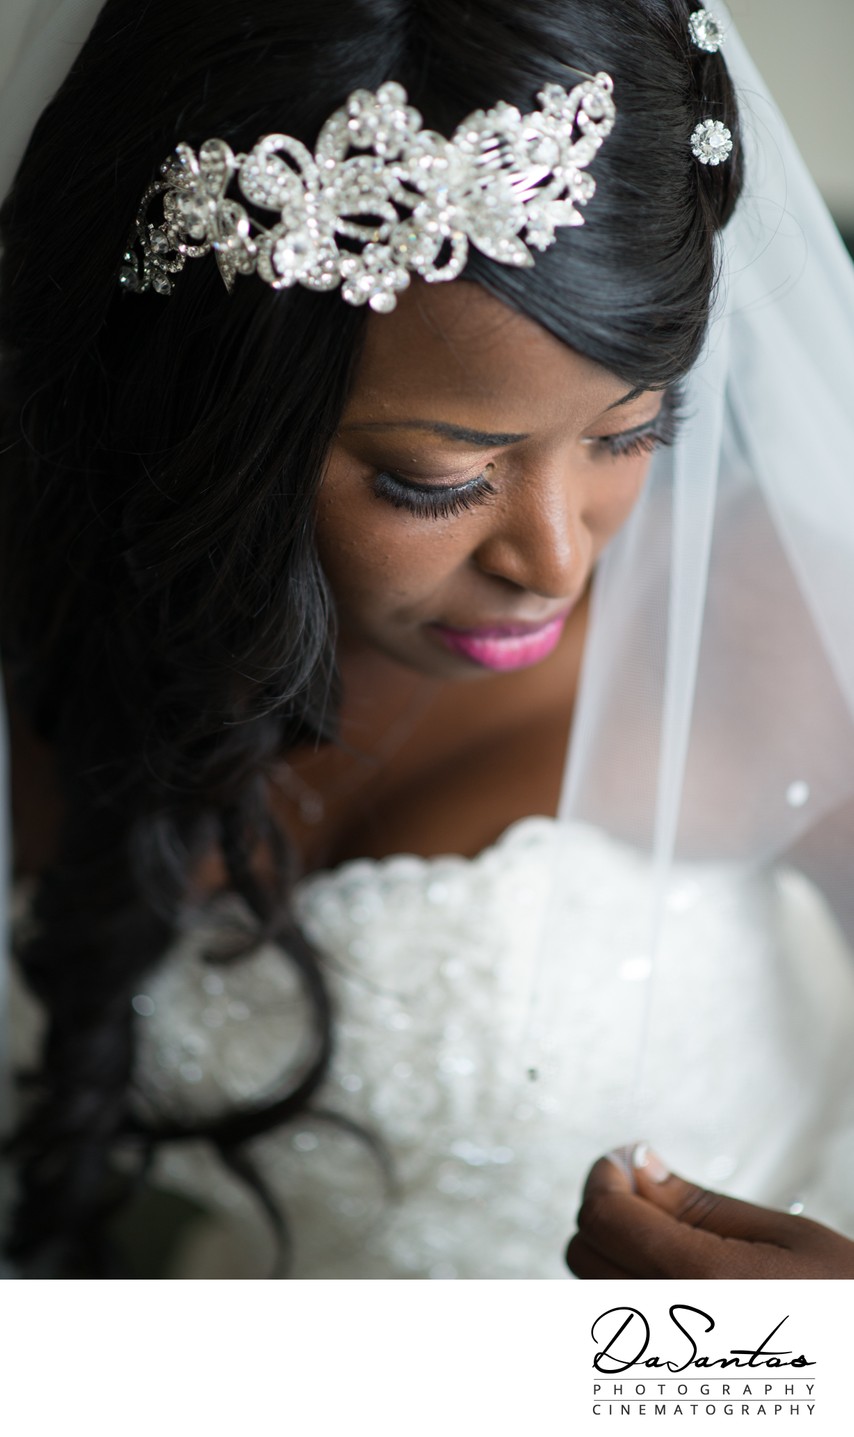 Wedding photo of a bride